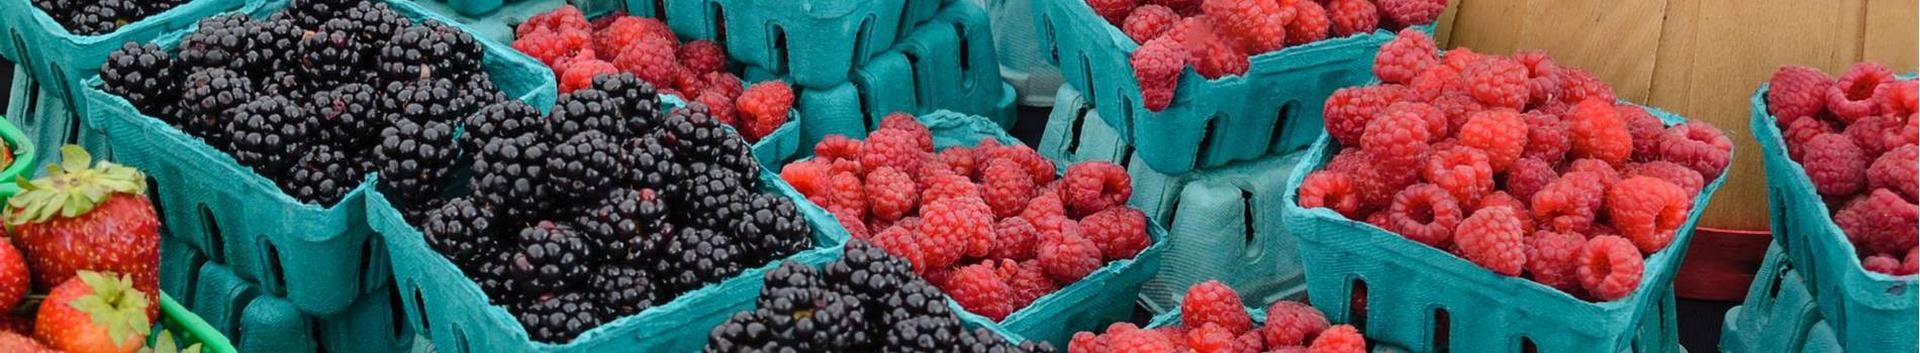 Oleme alustanud 2021/2022 maasika frigotaimede müügi hooaega. Lisandunud on mitmeid huvitavaid ja uusi sorte.